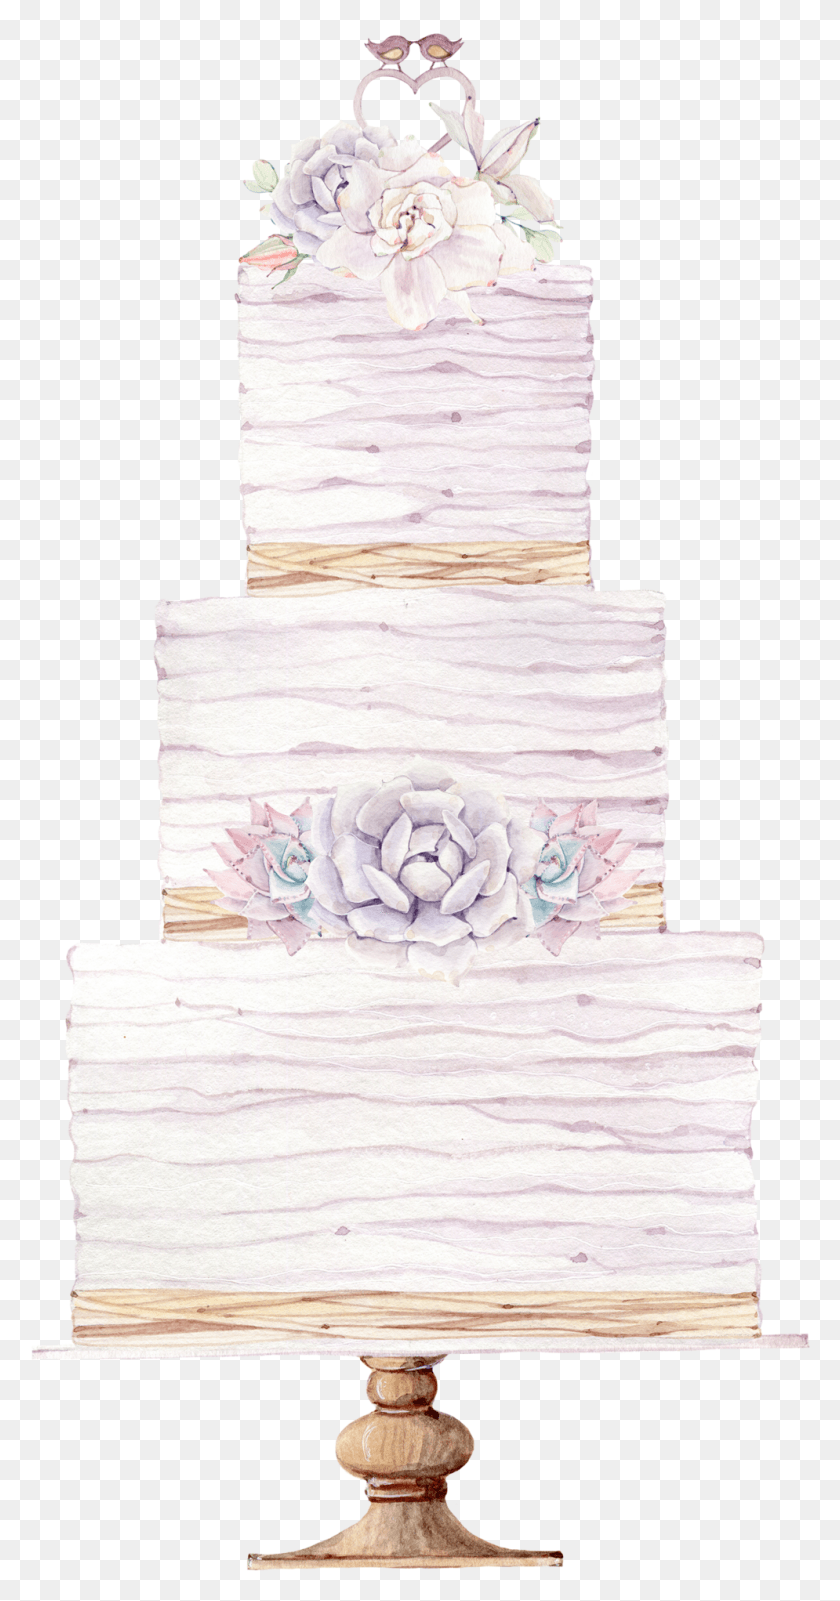 995x1967 Свадебный Торт Иллюстрация Акварель, Банное Полотенце, Полотенце, Торт Png Скачать